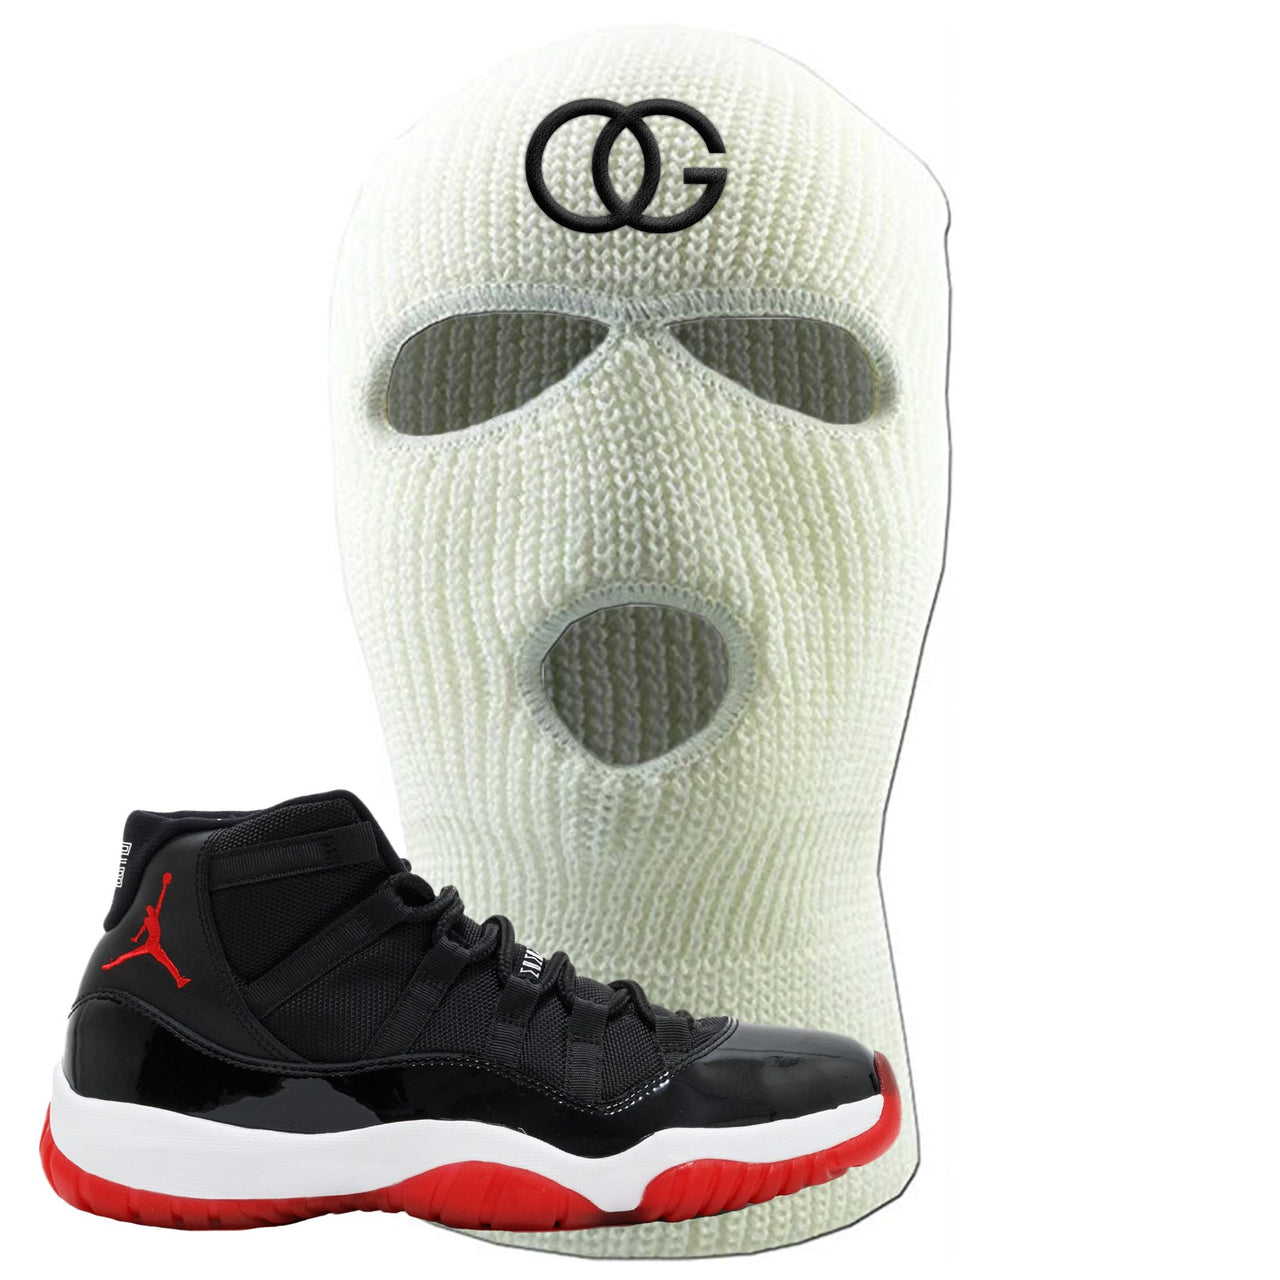 Jordan 11 Bred OG White Sneaker Hook Up Ski Mask